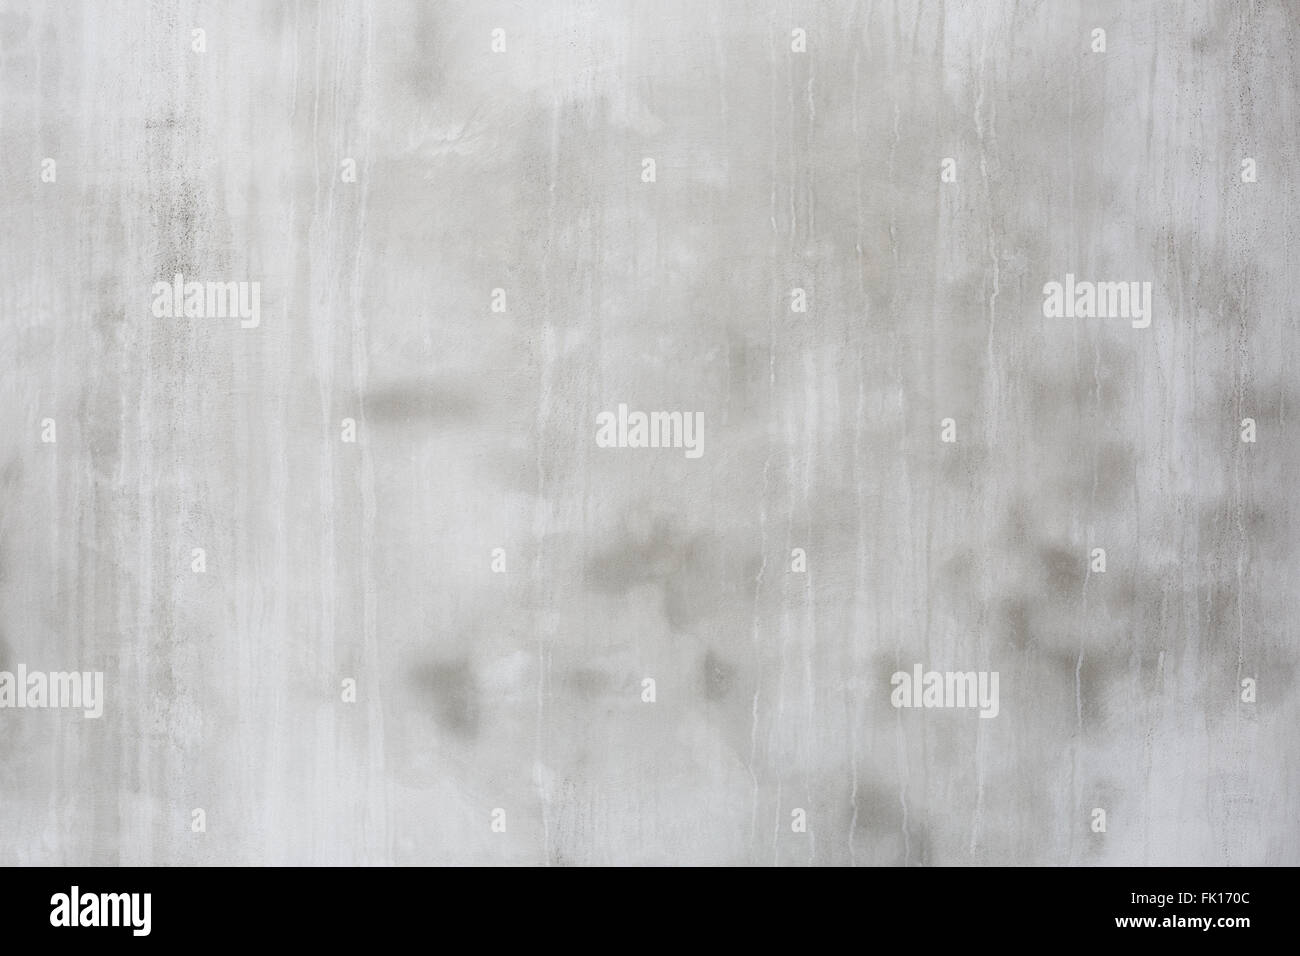 Mur de ciment gris avec des traces de gouttes d'eau, texture background abstrait Banque D'Images